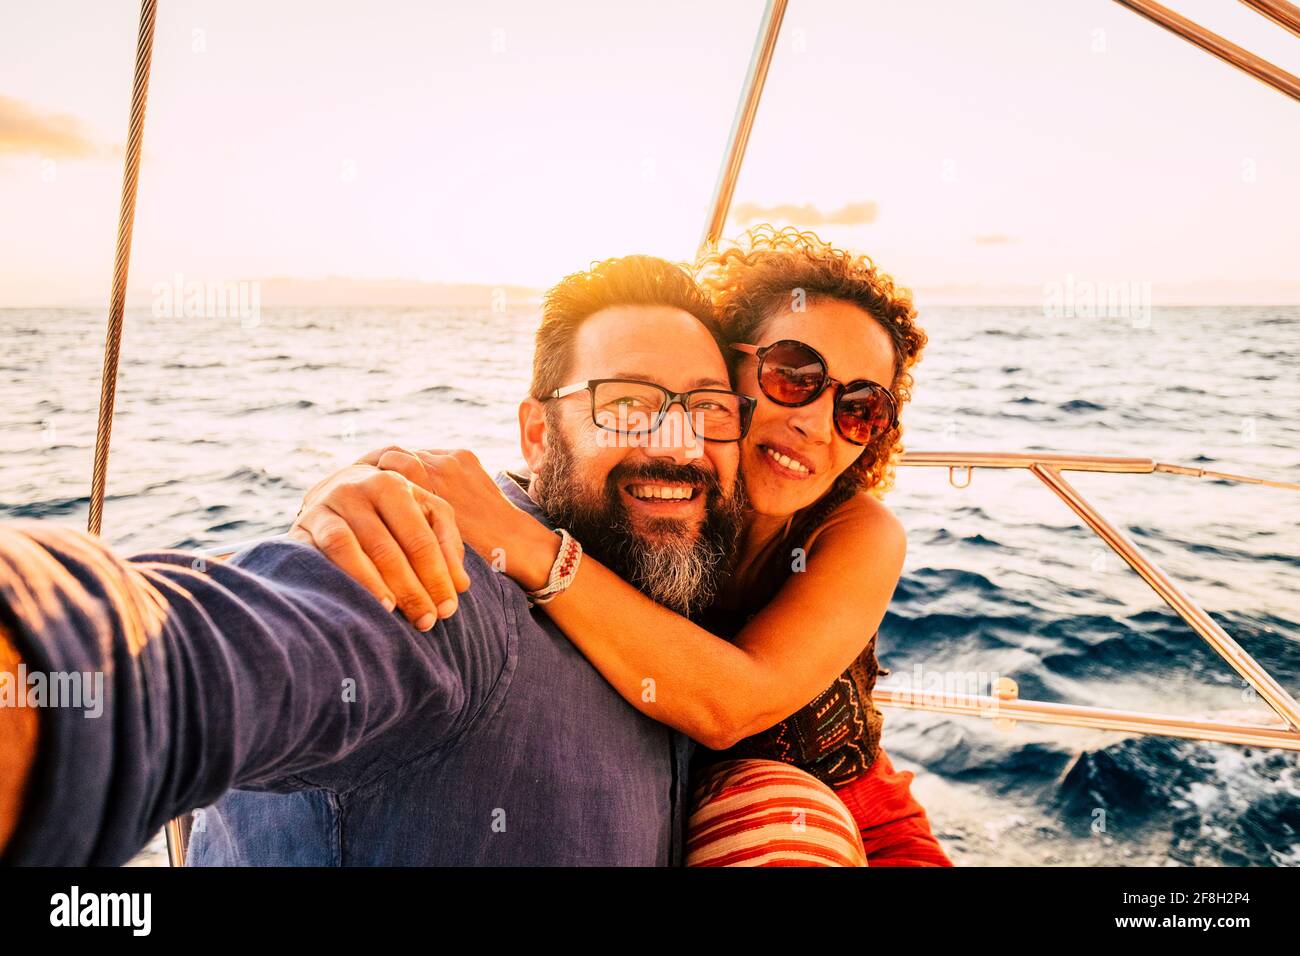 Fröhliches und glückliches junges erwachsenes Paar lächelt und genießt das Segelboot Yacht Reise im Sommer Tag Urlaub Urlaubsreise Abenteuer-Lifestyle - Liebe und Ro Stockfoto